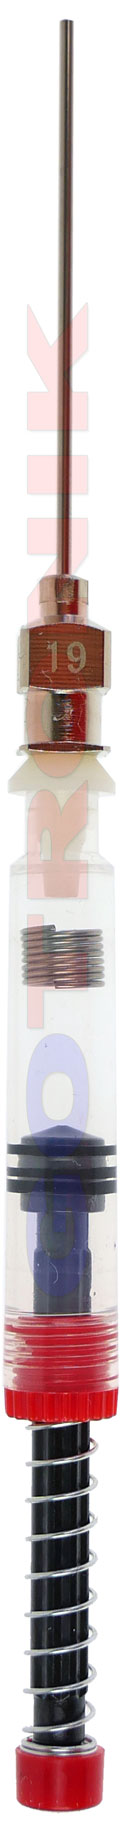 mini strzykawka, miniaturowa strzykawka, strzykawka z igłą stalową, do uzupełniania atramentu, RBS-015, RBS015